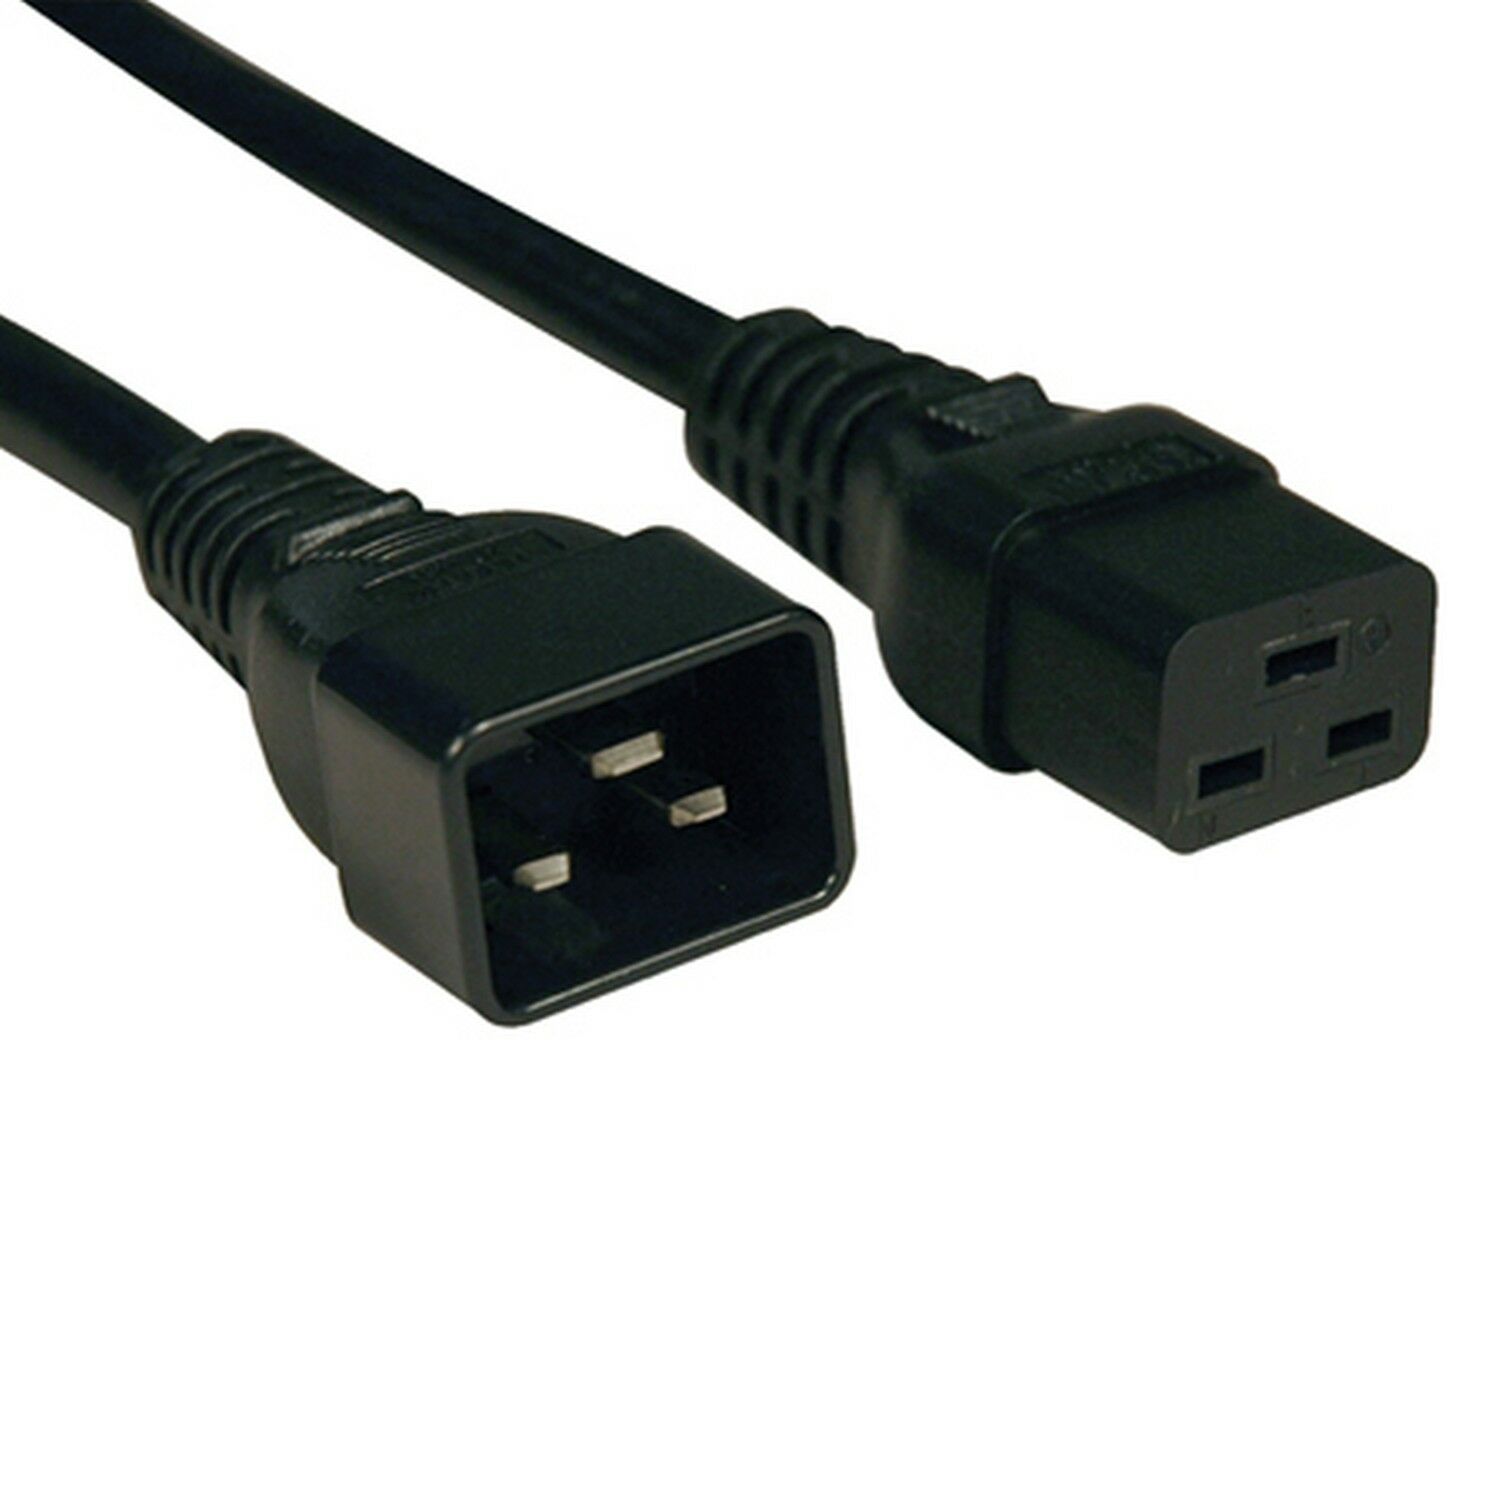 Cable de Alimentación, IEC 60320 C19, IEC 320 C20, 1.8 m, 20 A, 250 VAC, Negro